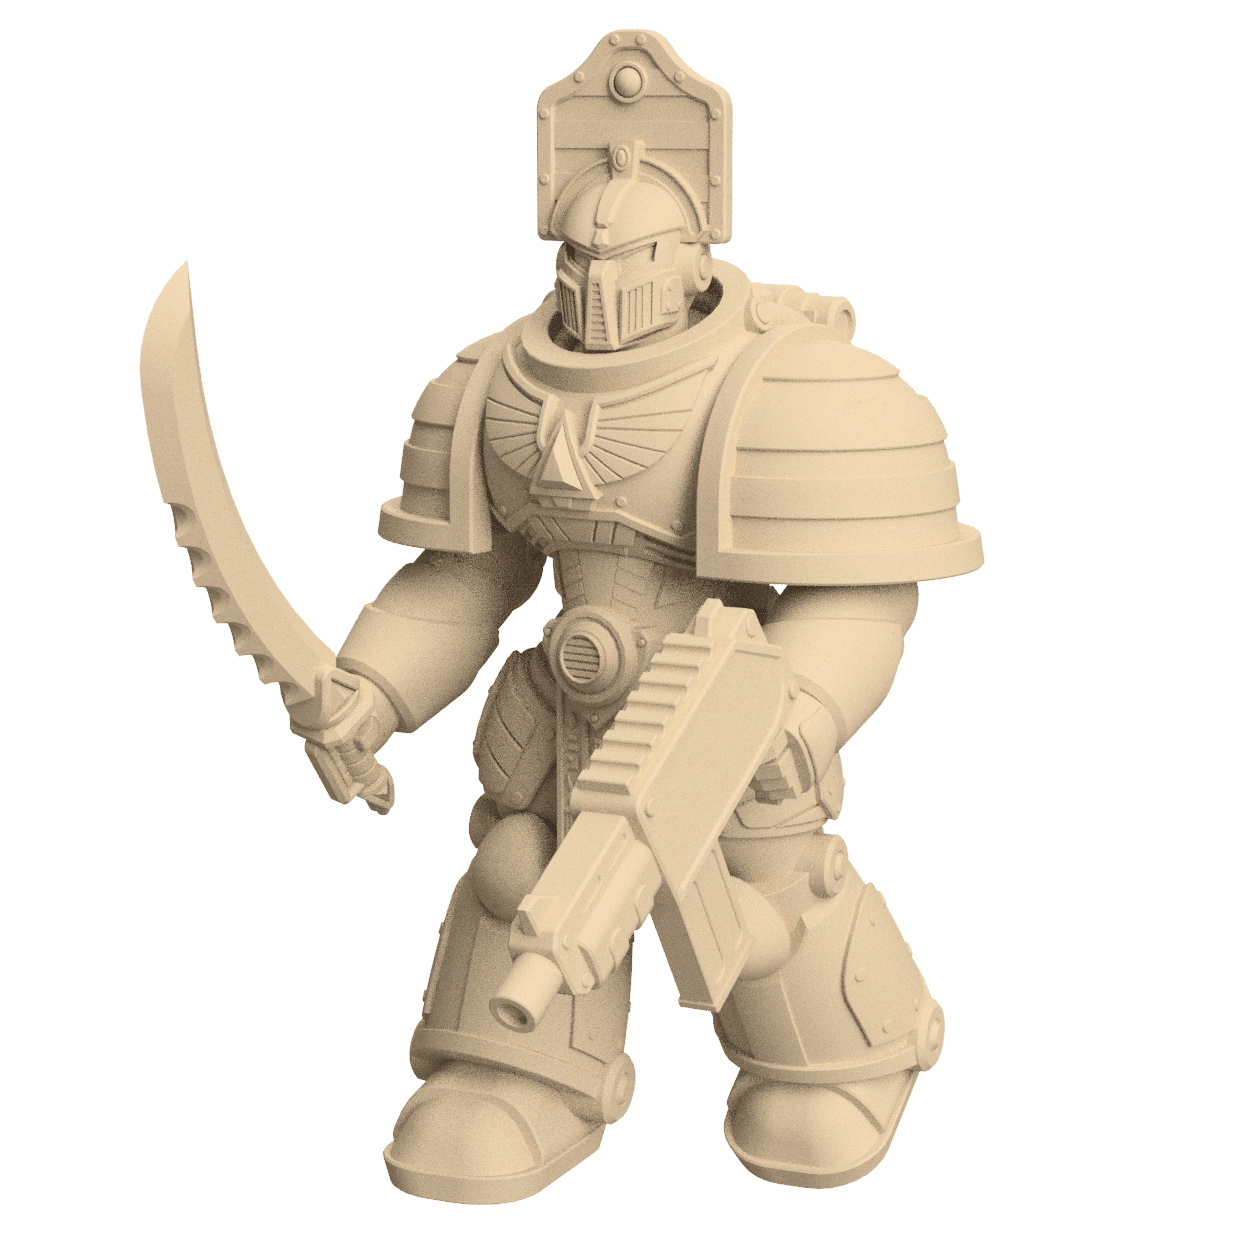 Modular 3D Printable Dune Raiser Leader Miniature for Wargaming  3d model